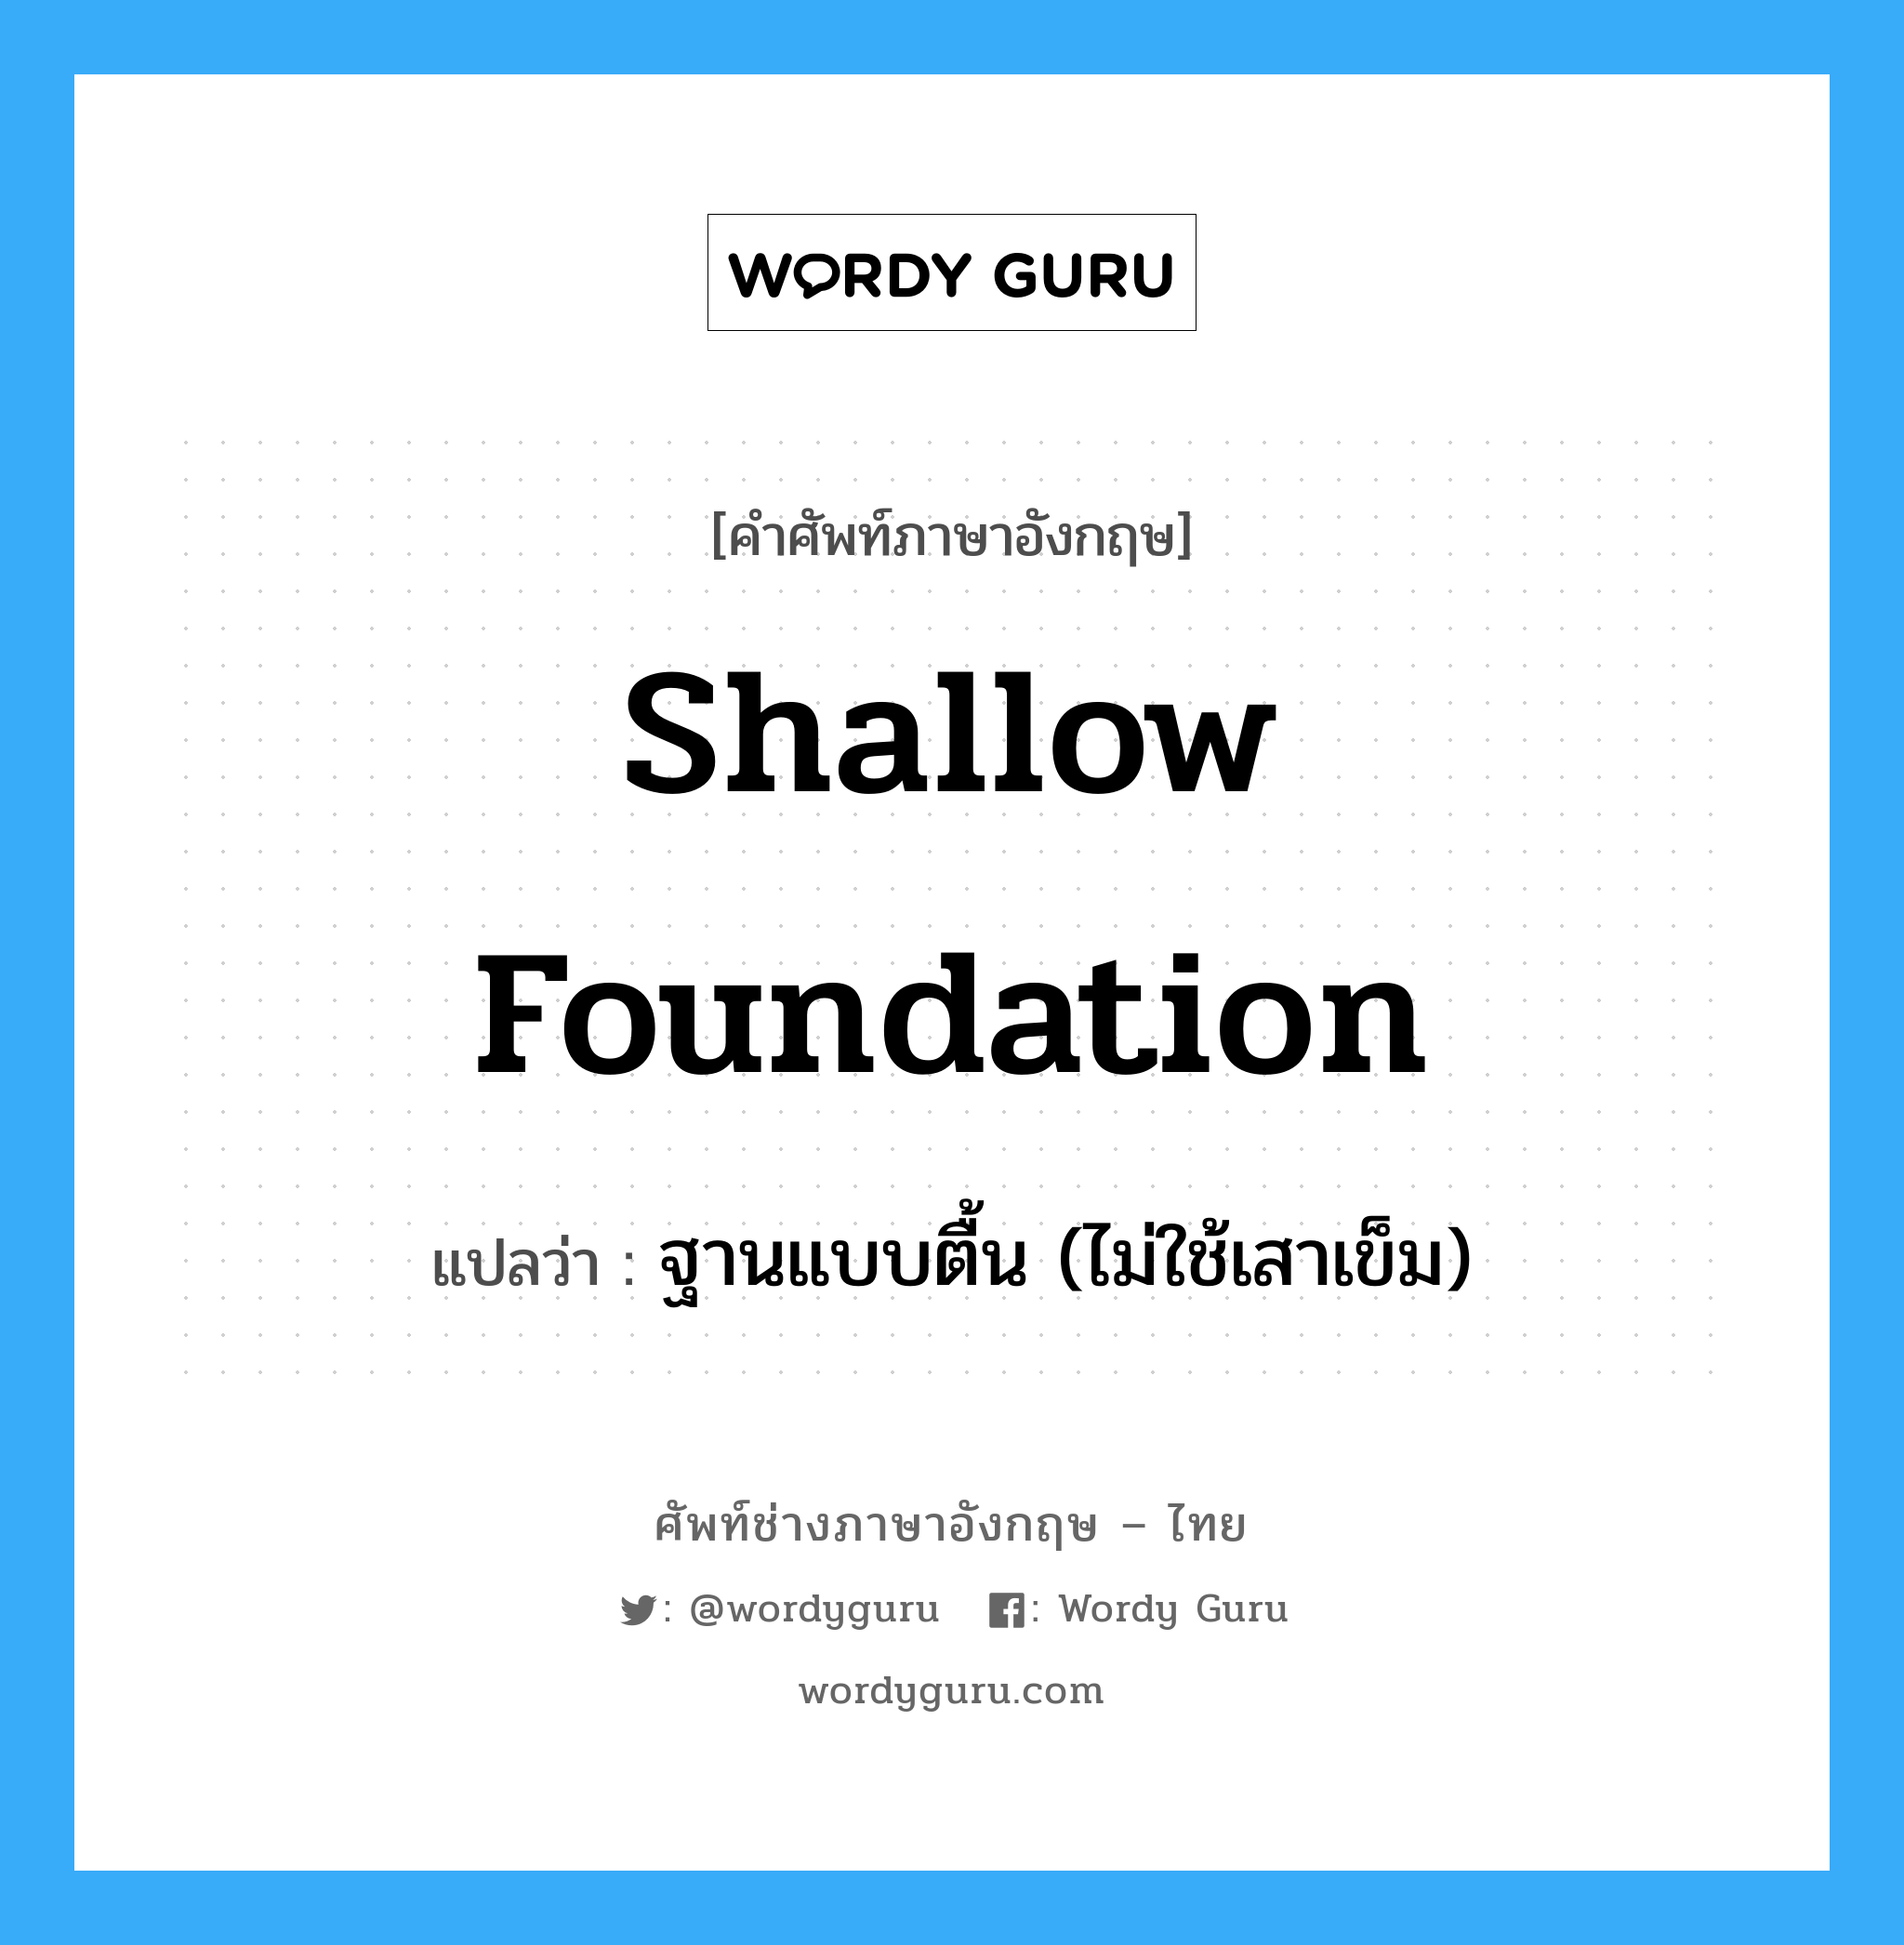 ฐานแบบตื้น (ไม่ใช้เสาเข็ม) ภาษาอังกฤษ?, คำศัพท์ช่างภาษาอังกฤษ - ไทย ฐานแบบตื้น (ไม่ใช้เสาเข็ม) คำศัพท์ภาษาอังกฤษ ฐานแบบตื้น (ไม่ใช้เสาเข็ม) แปลว่า shallow foundation